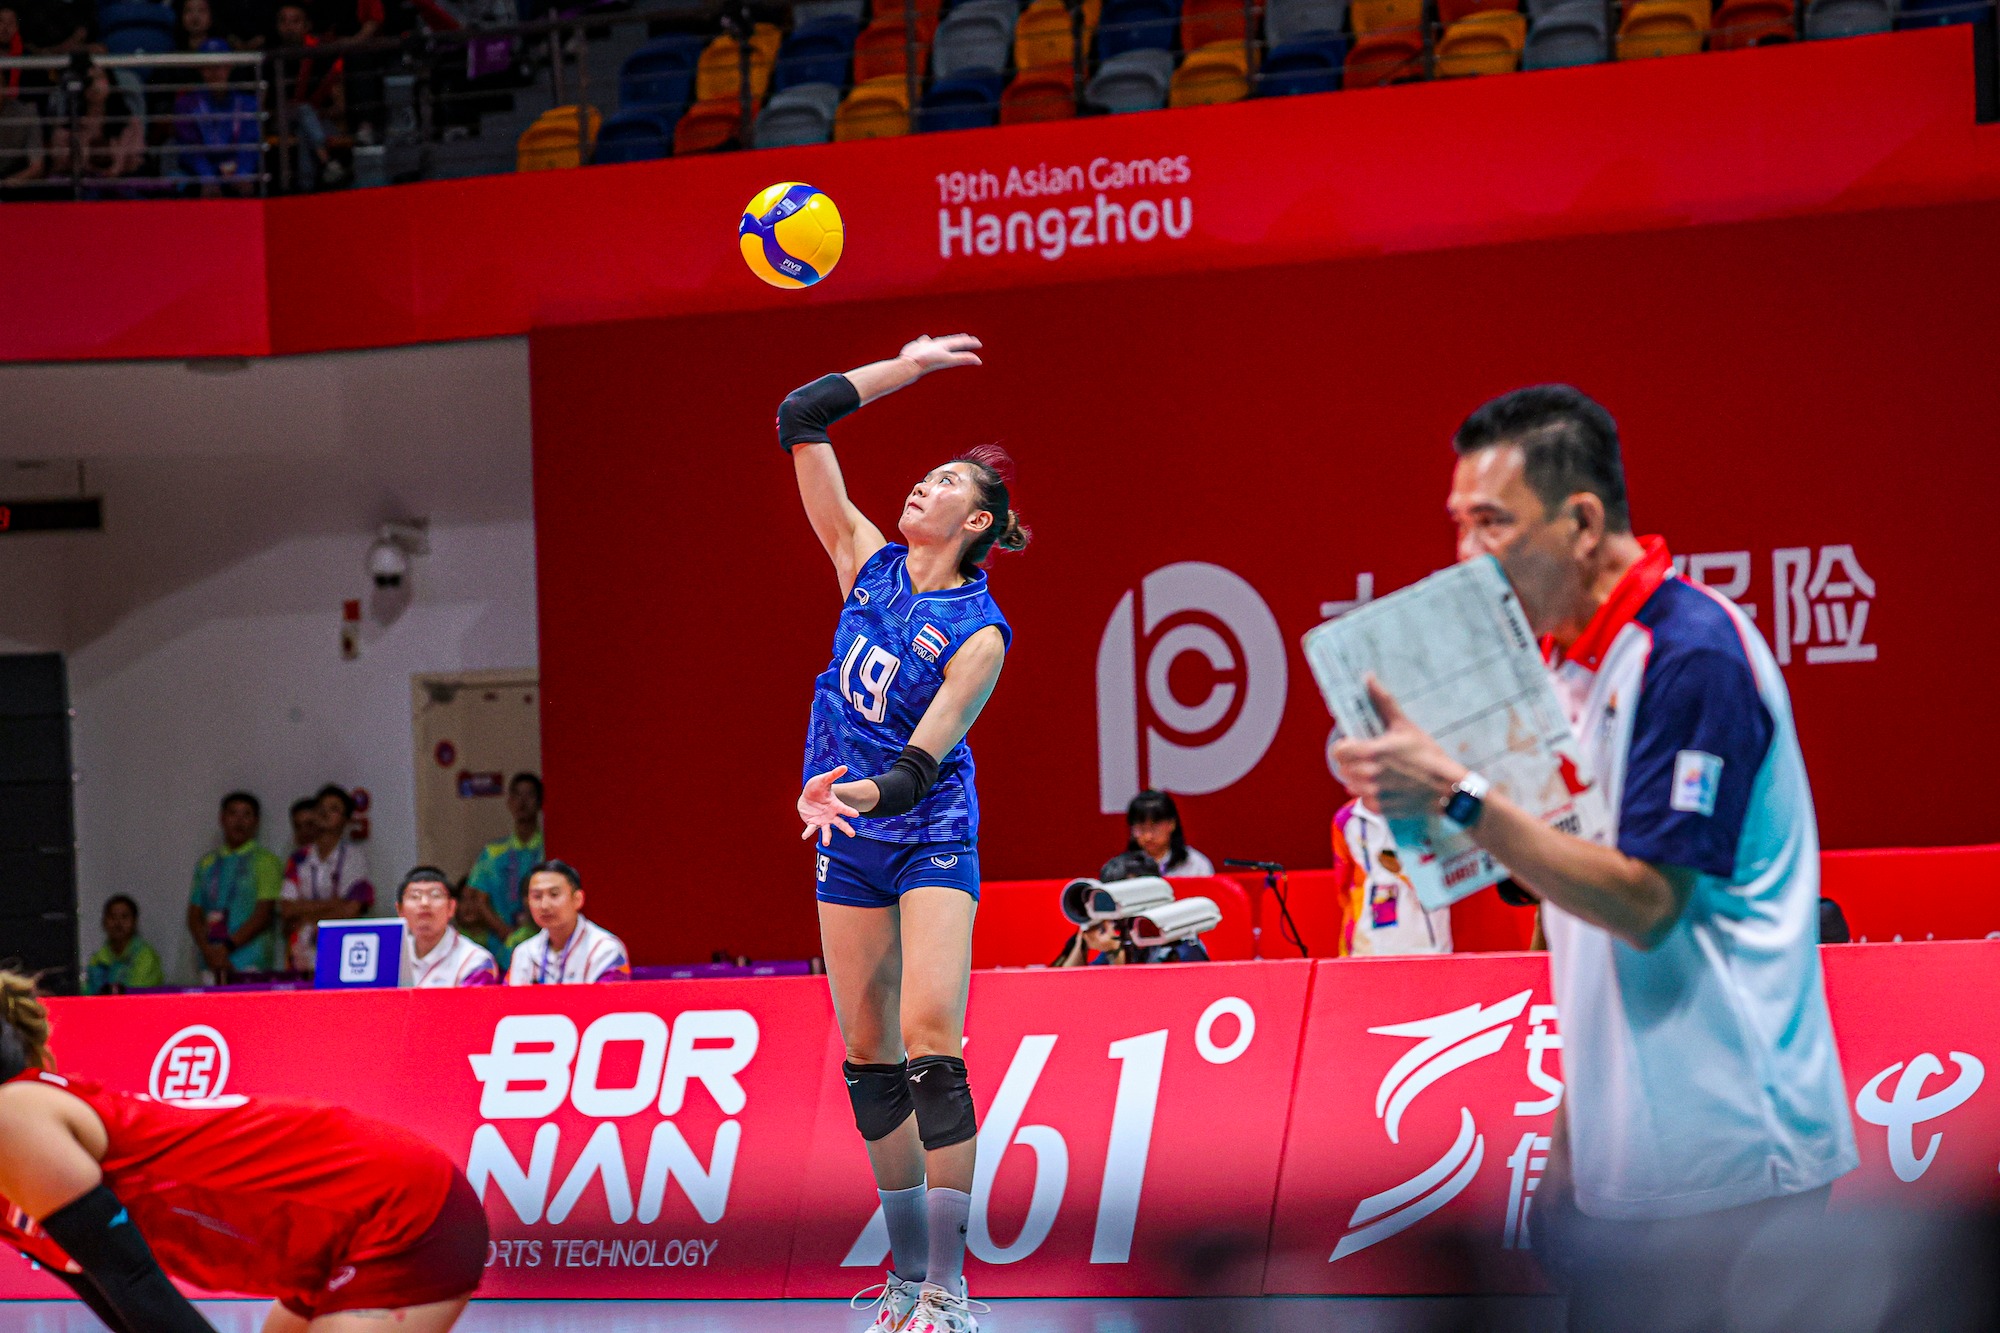 HLV ĐT bóng chuyền nữ Thái Lan nói gì trận tranh HCĐ ASIAD 19 với Việt Nam?